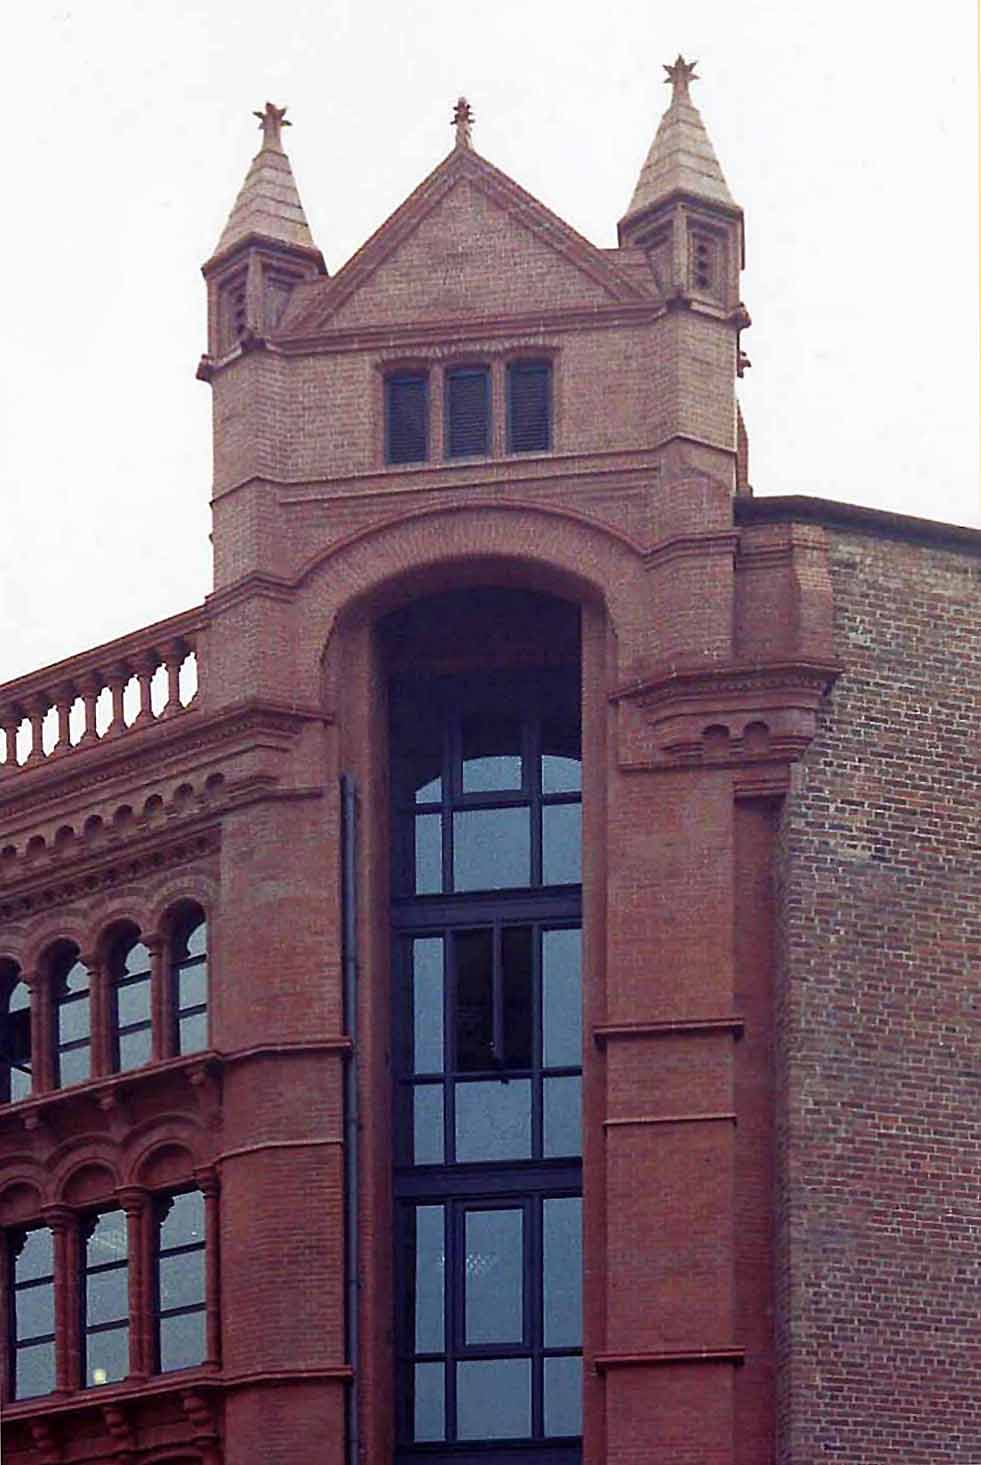 Brimley's Building, Liverpool, England